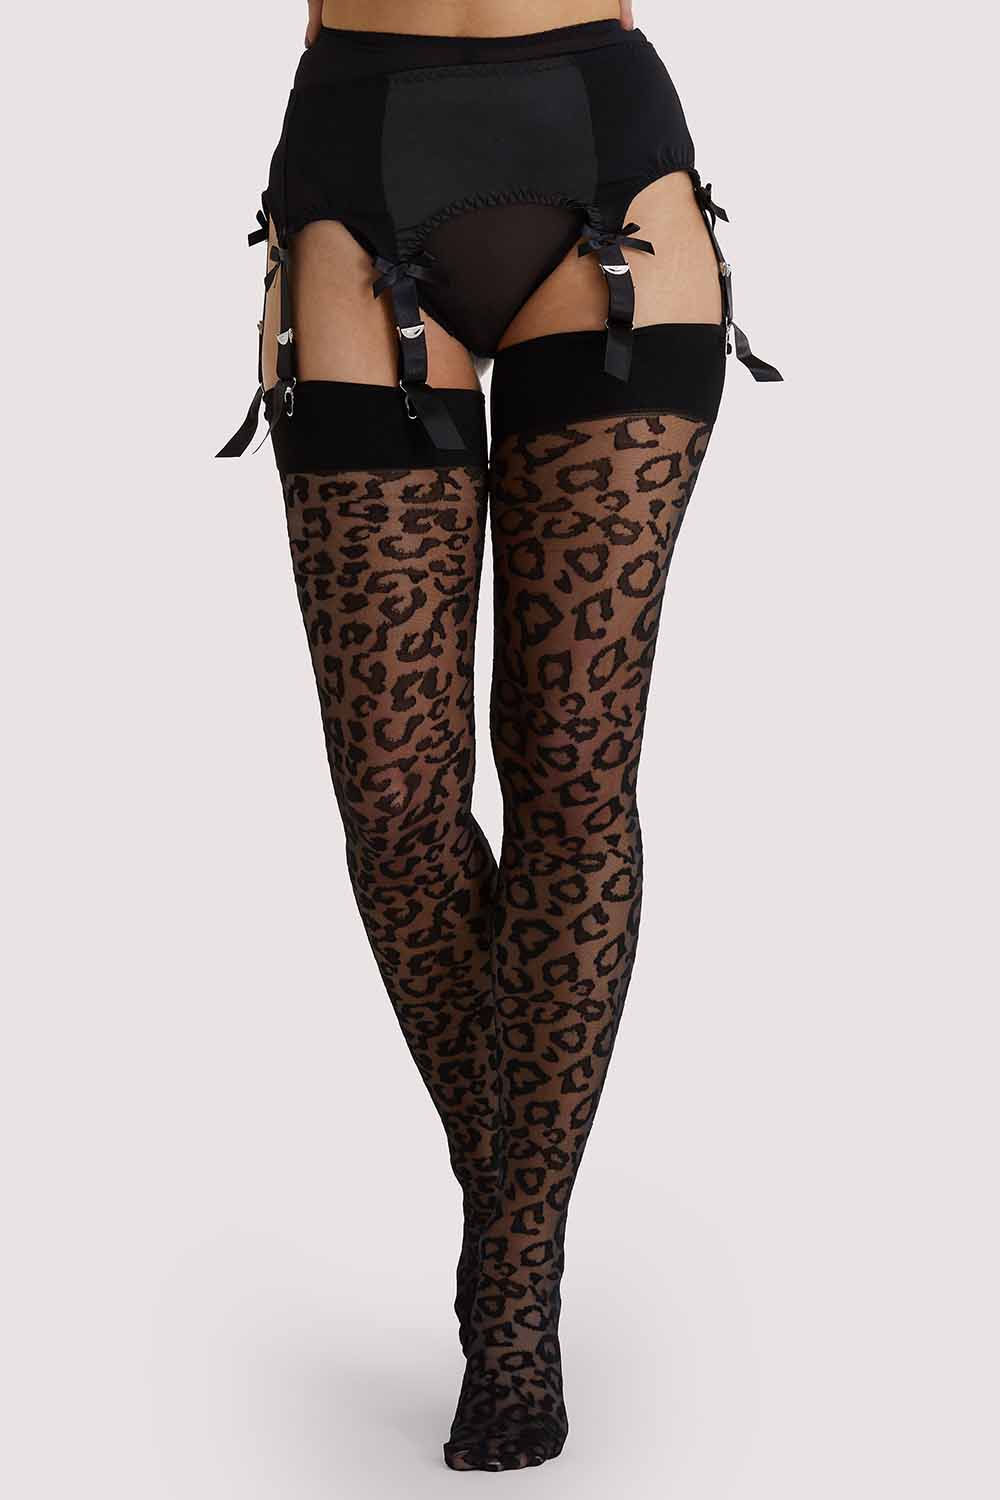 Leopard Knit Stockings - Black/Black US 4 - 18 Tall – Playful